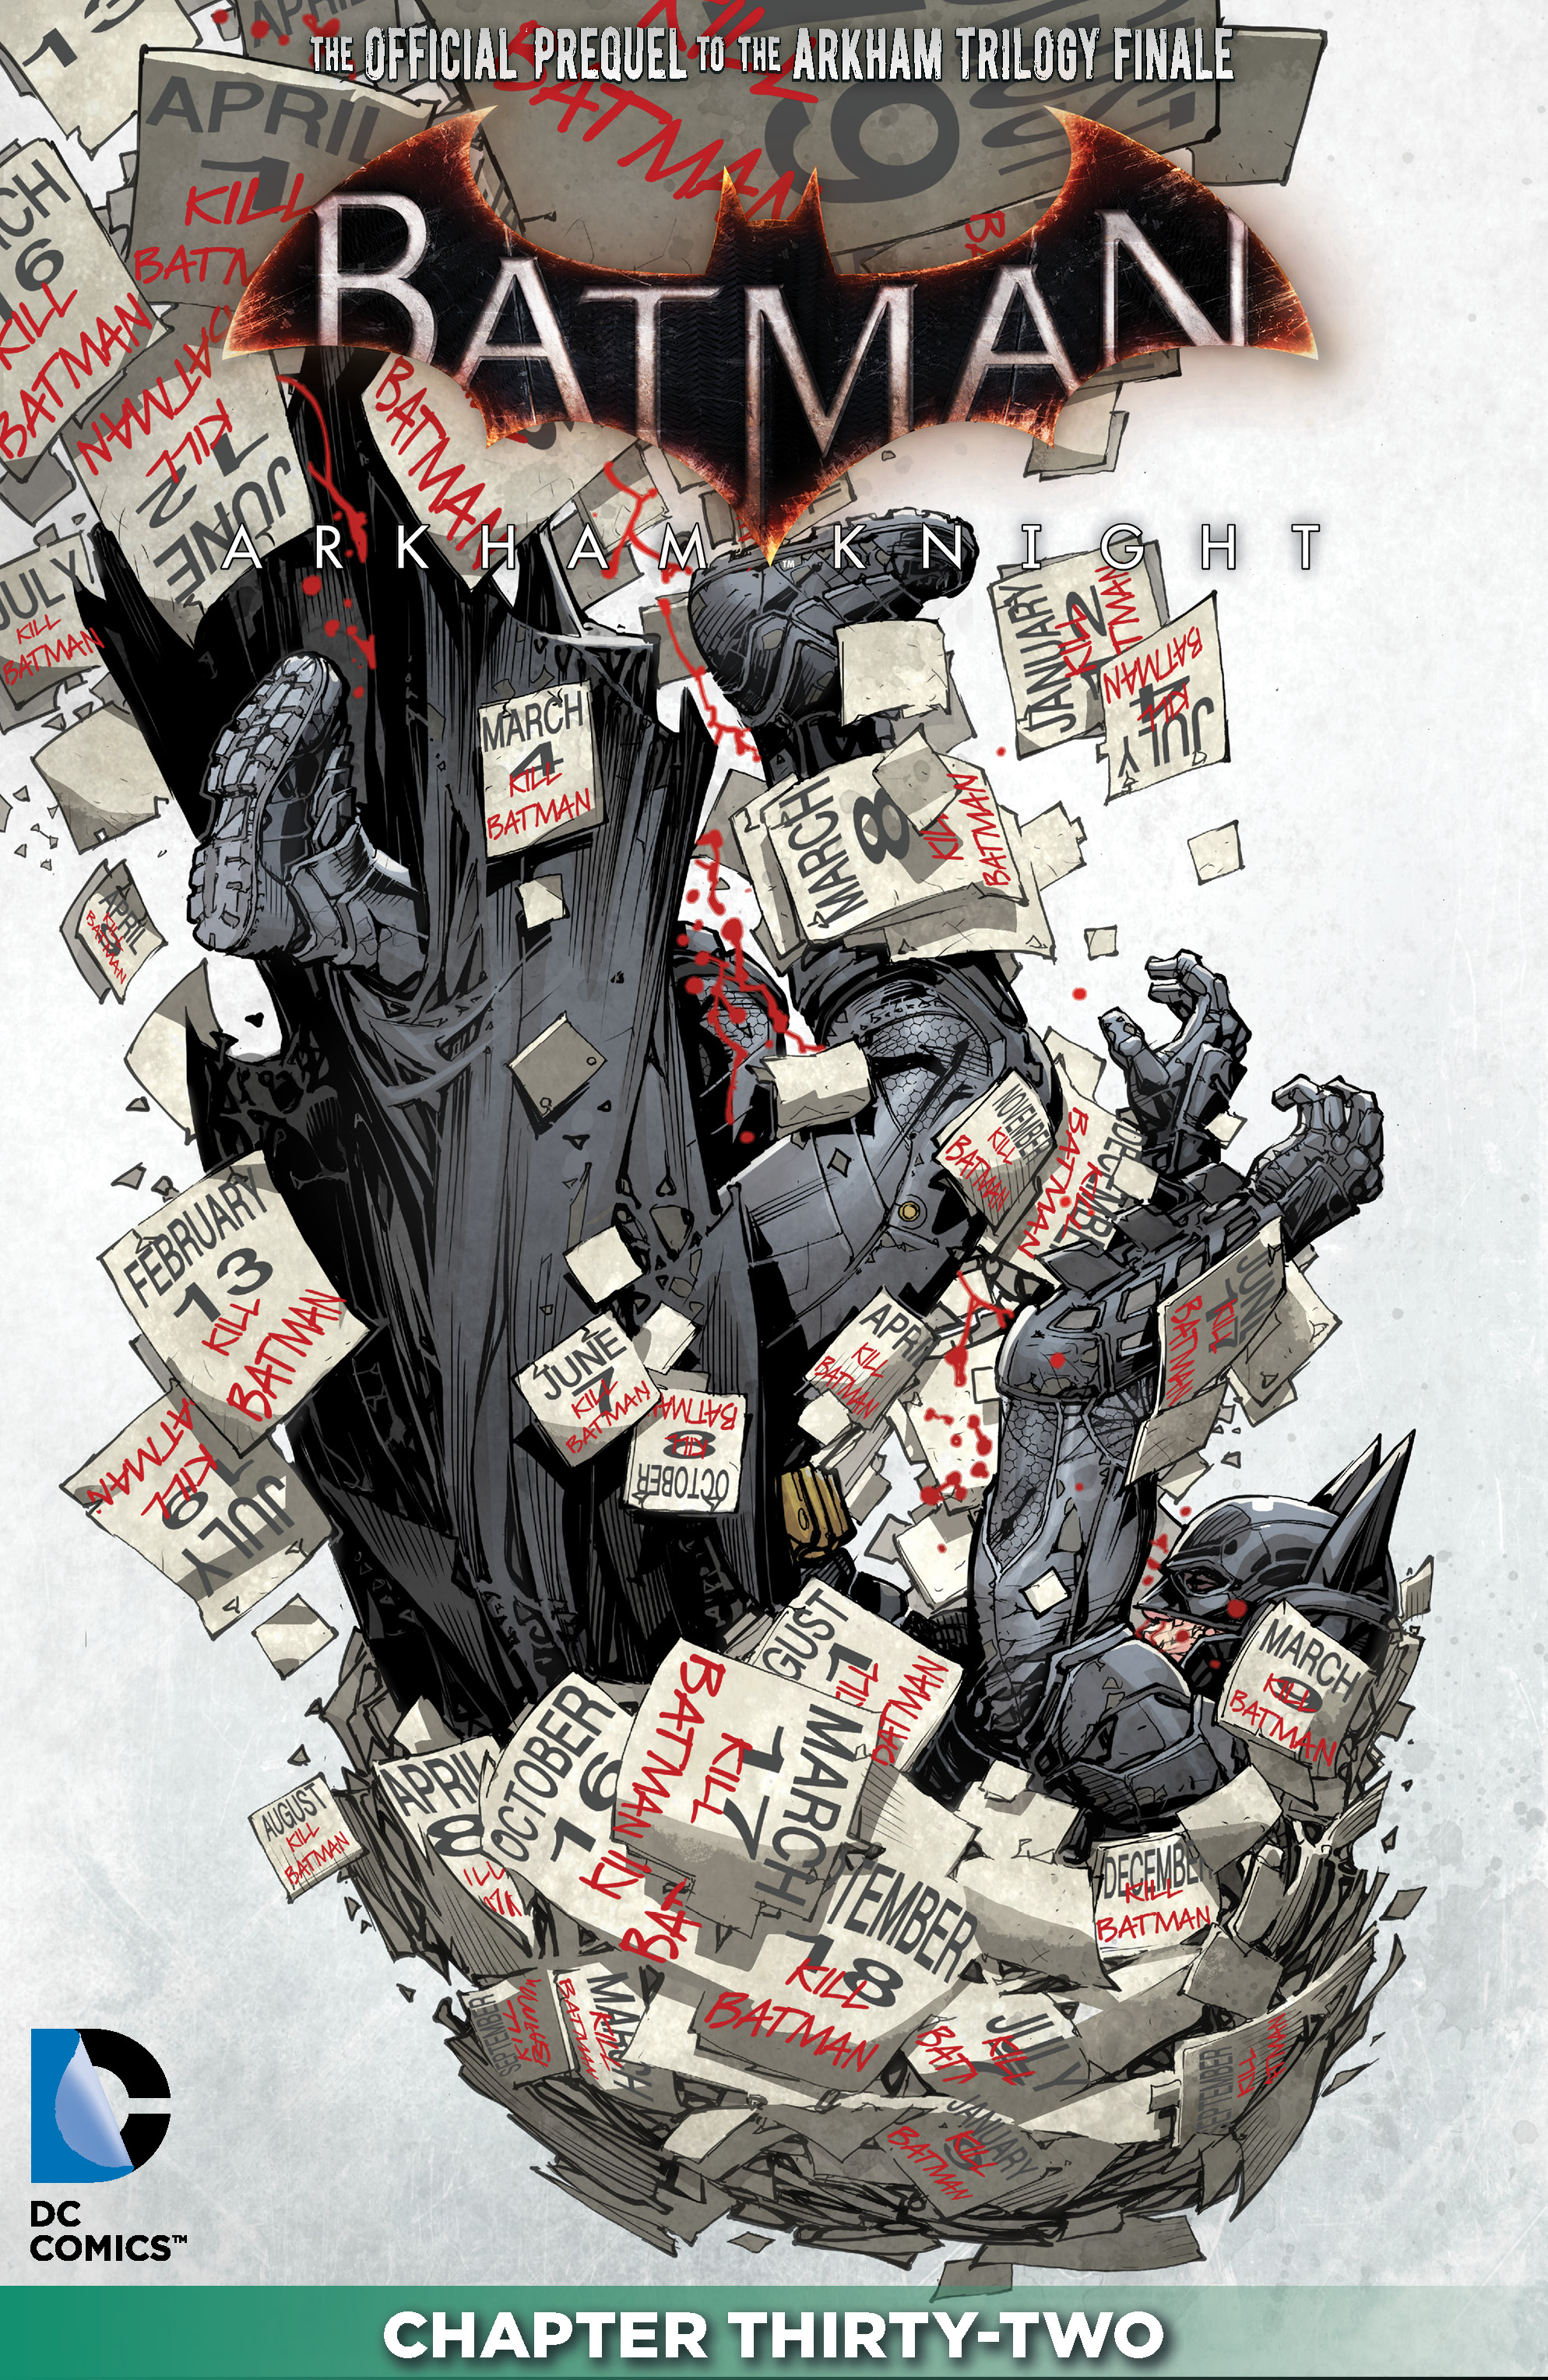 Batman: Arkham Knight #32 preview images